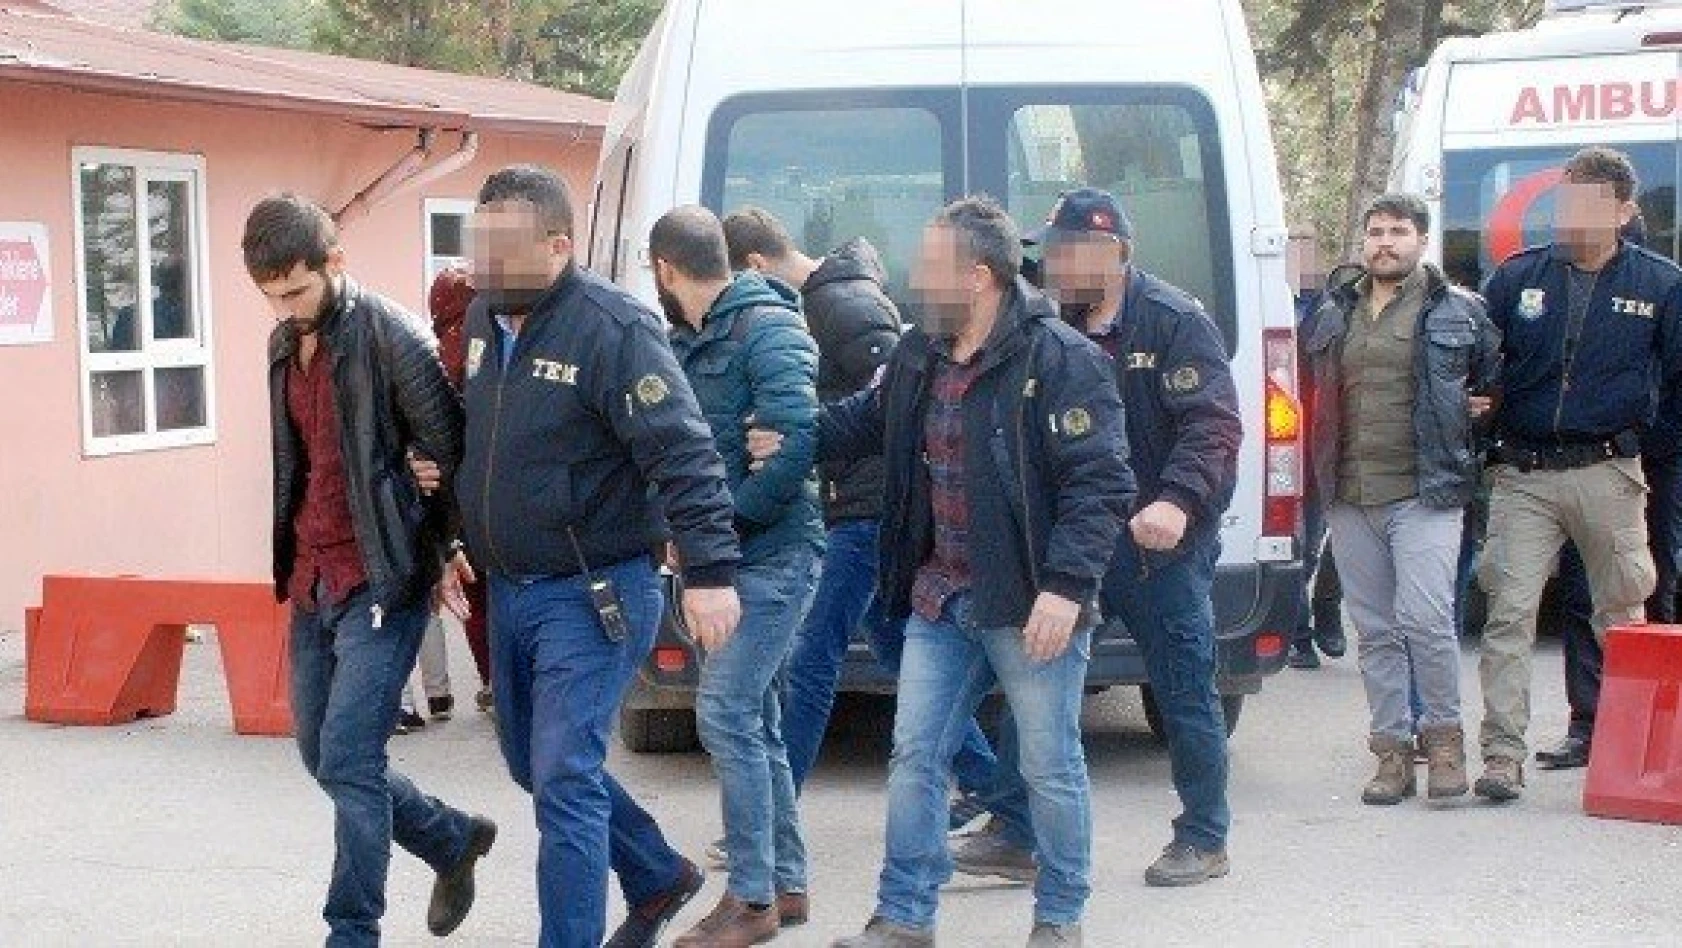 Kastamonu'da PKK sempatizanı 3 öğrenci tutuklandı